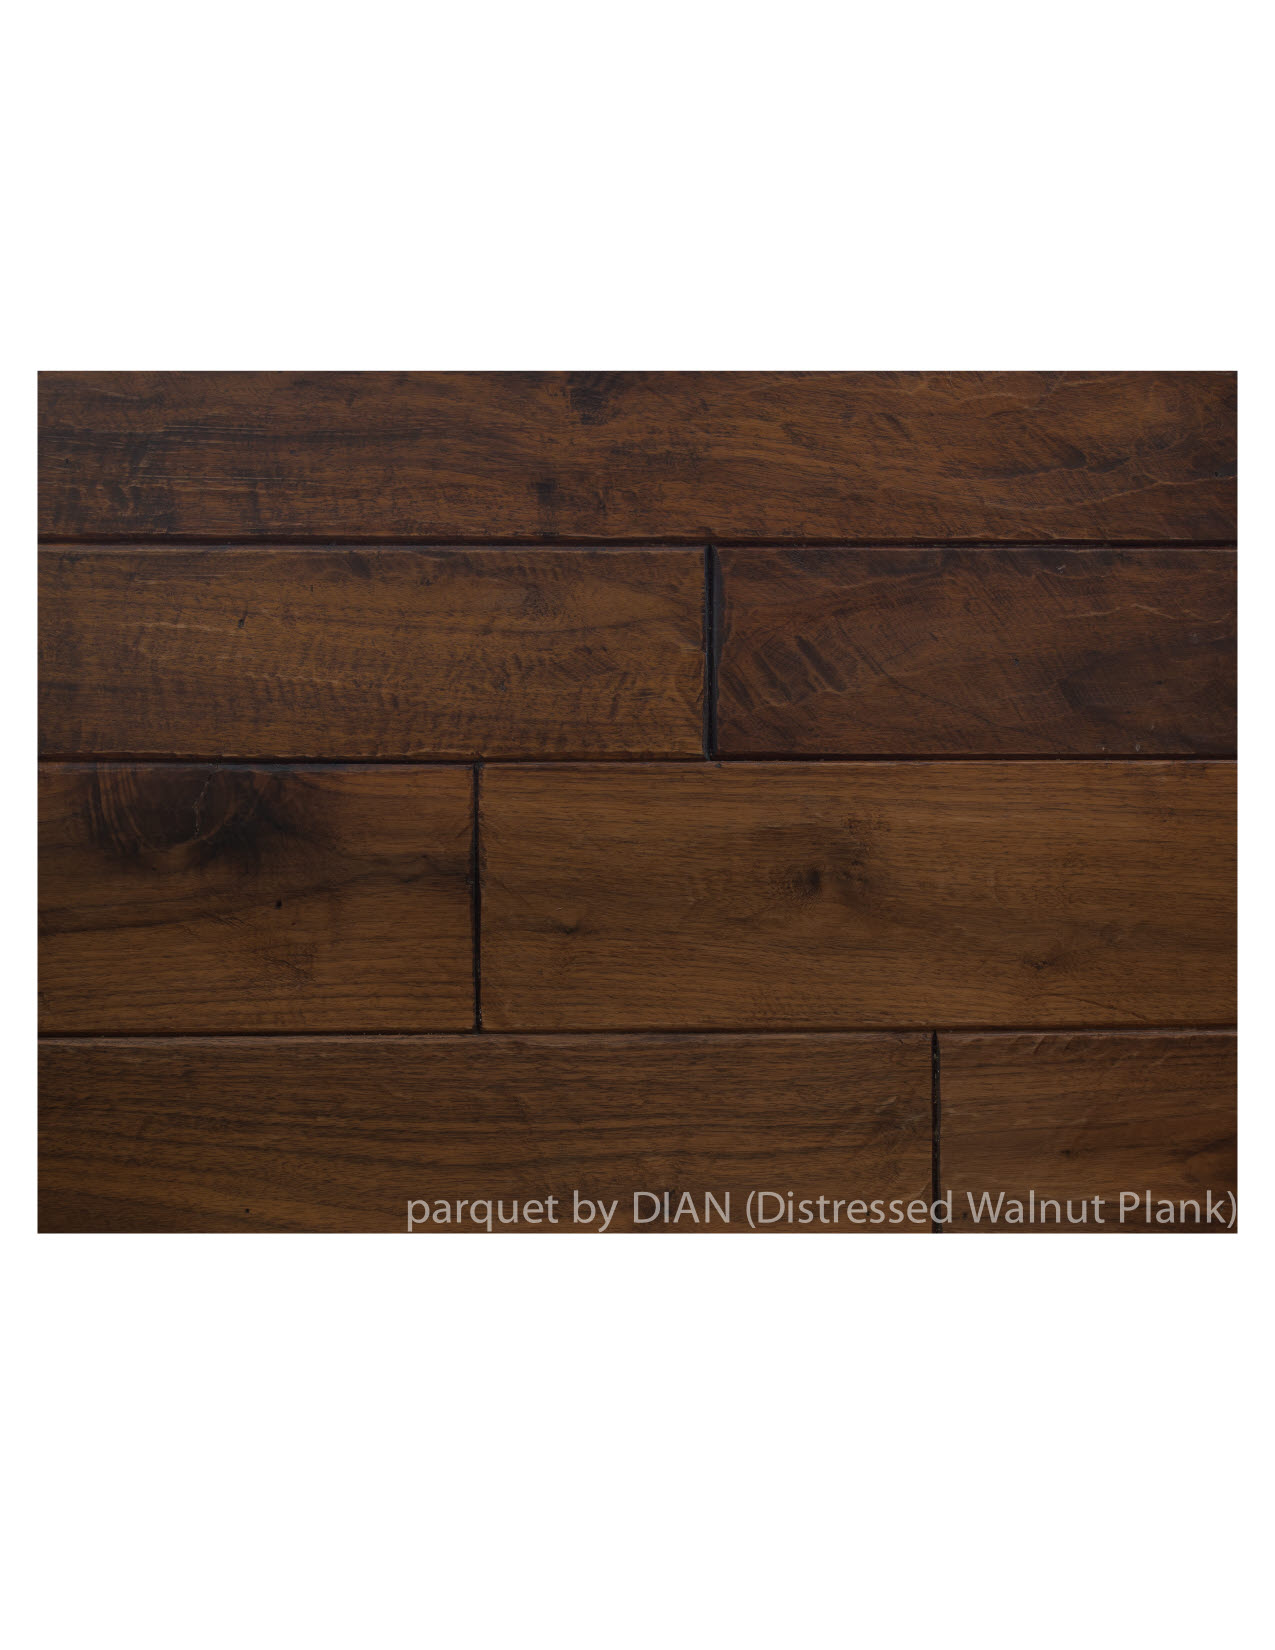 Distressed Walnut Plank